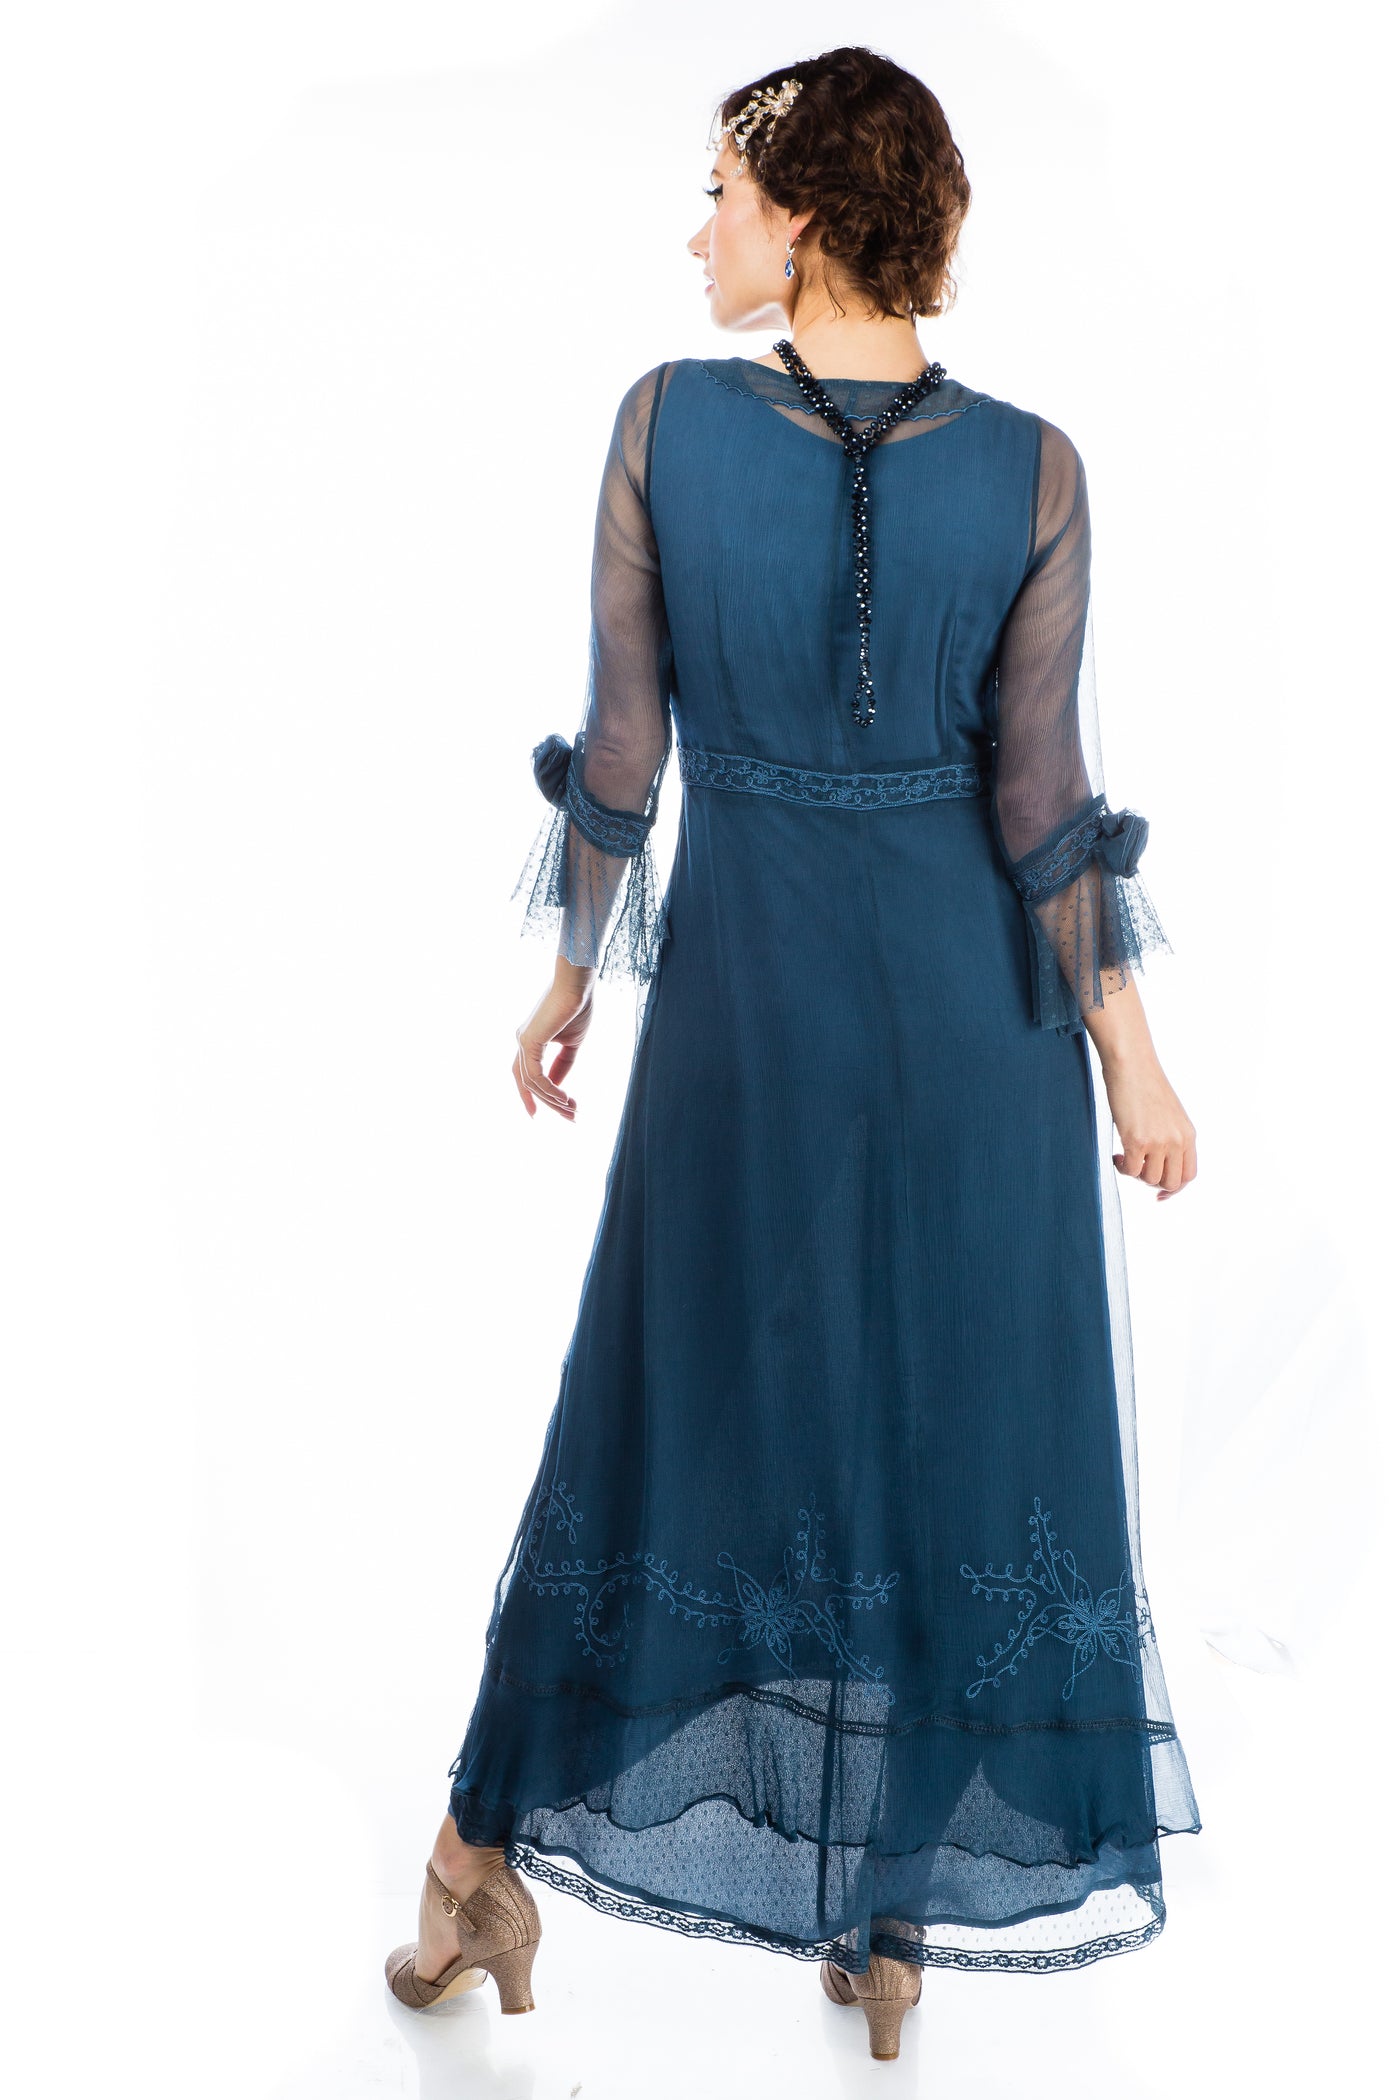 Dafna Bridgerton Inspired Dress 40836 in Lapis Blue by Nataya